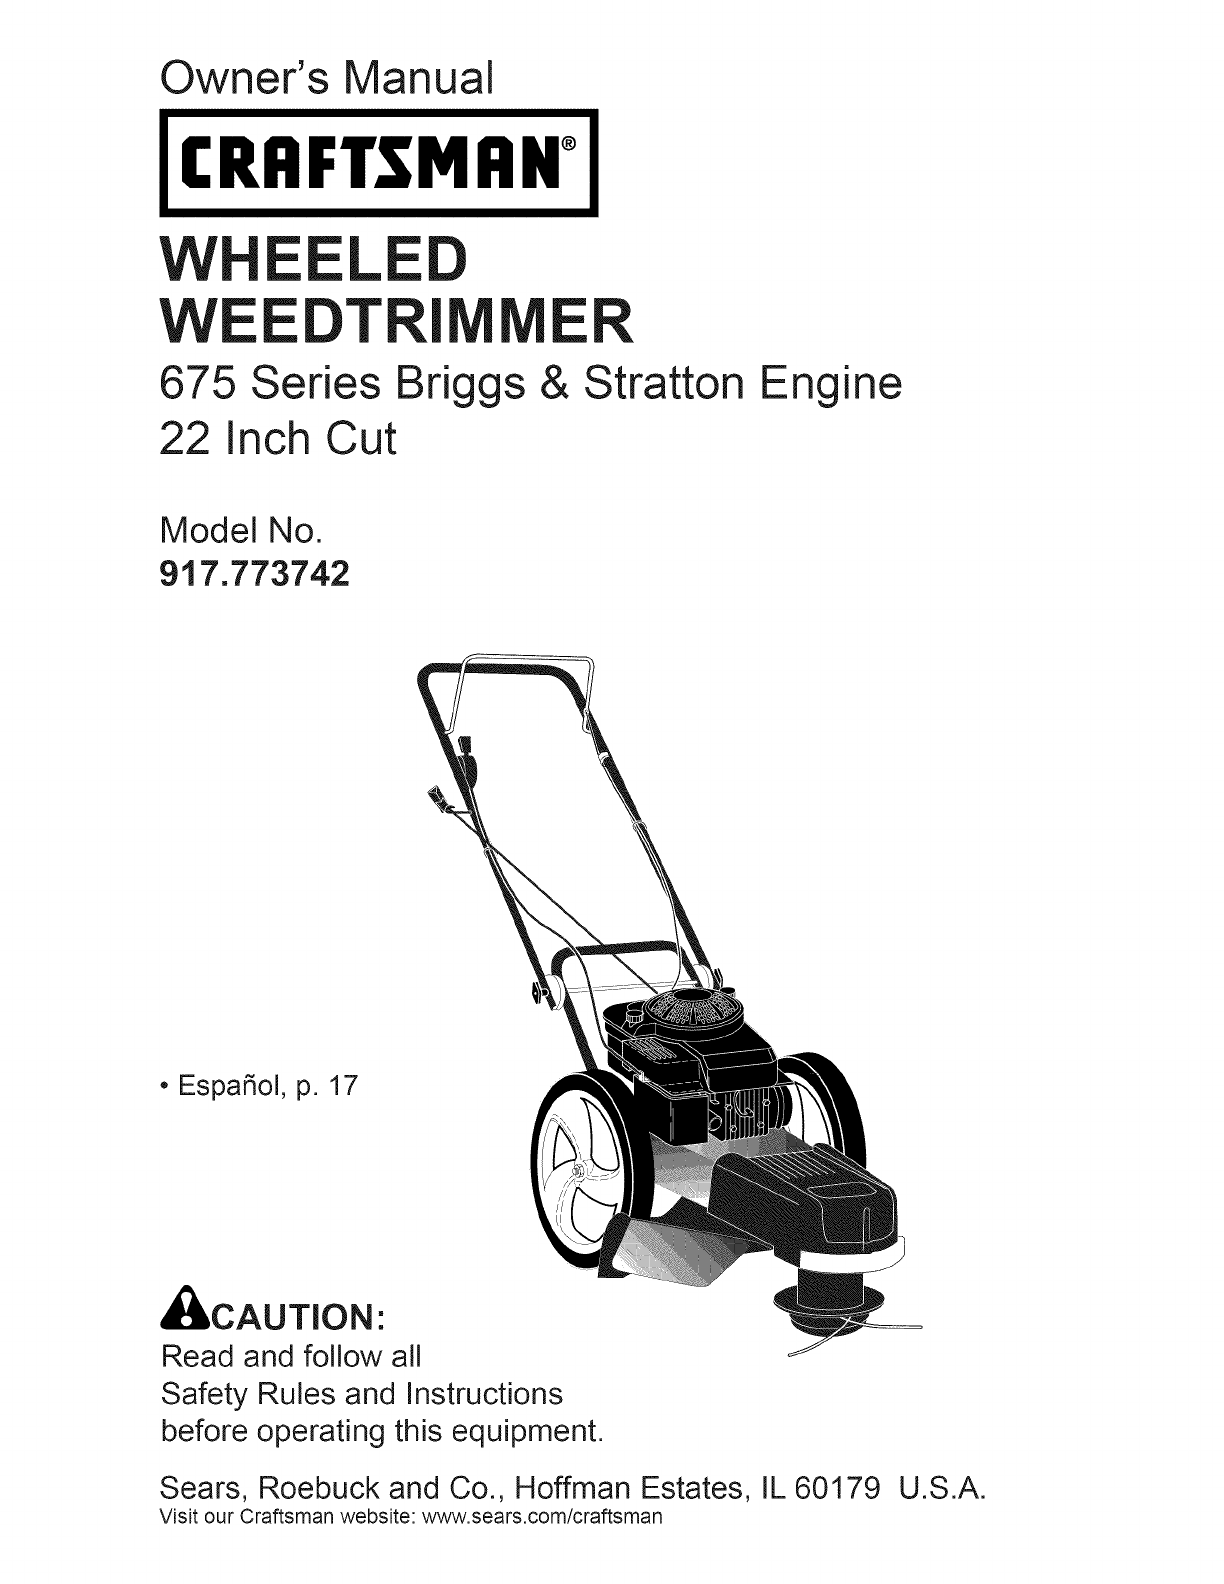 Carburetor Carb For Craftsman 917.773710 917.773703 Wheeled Weed Trimmer 